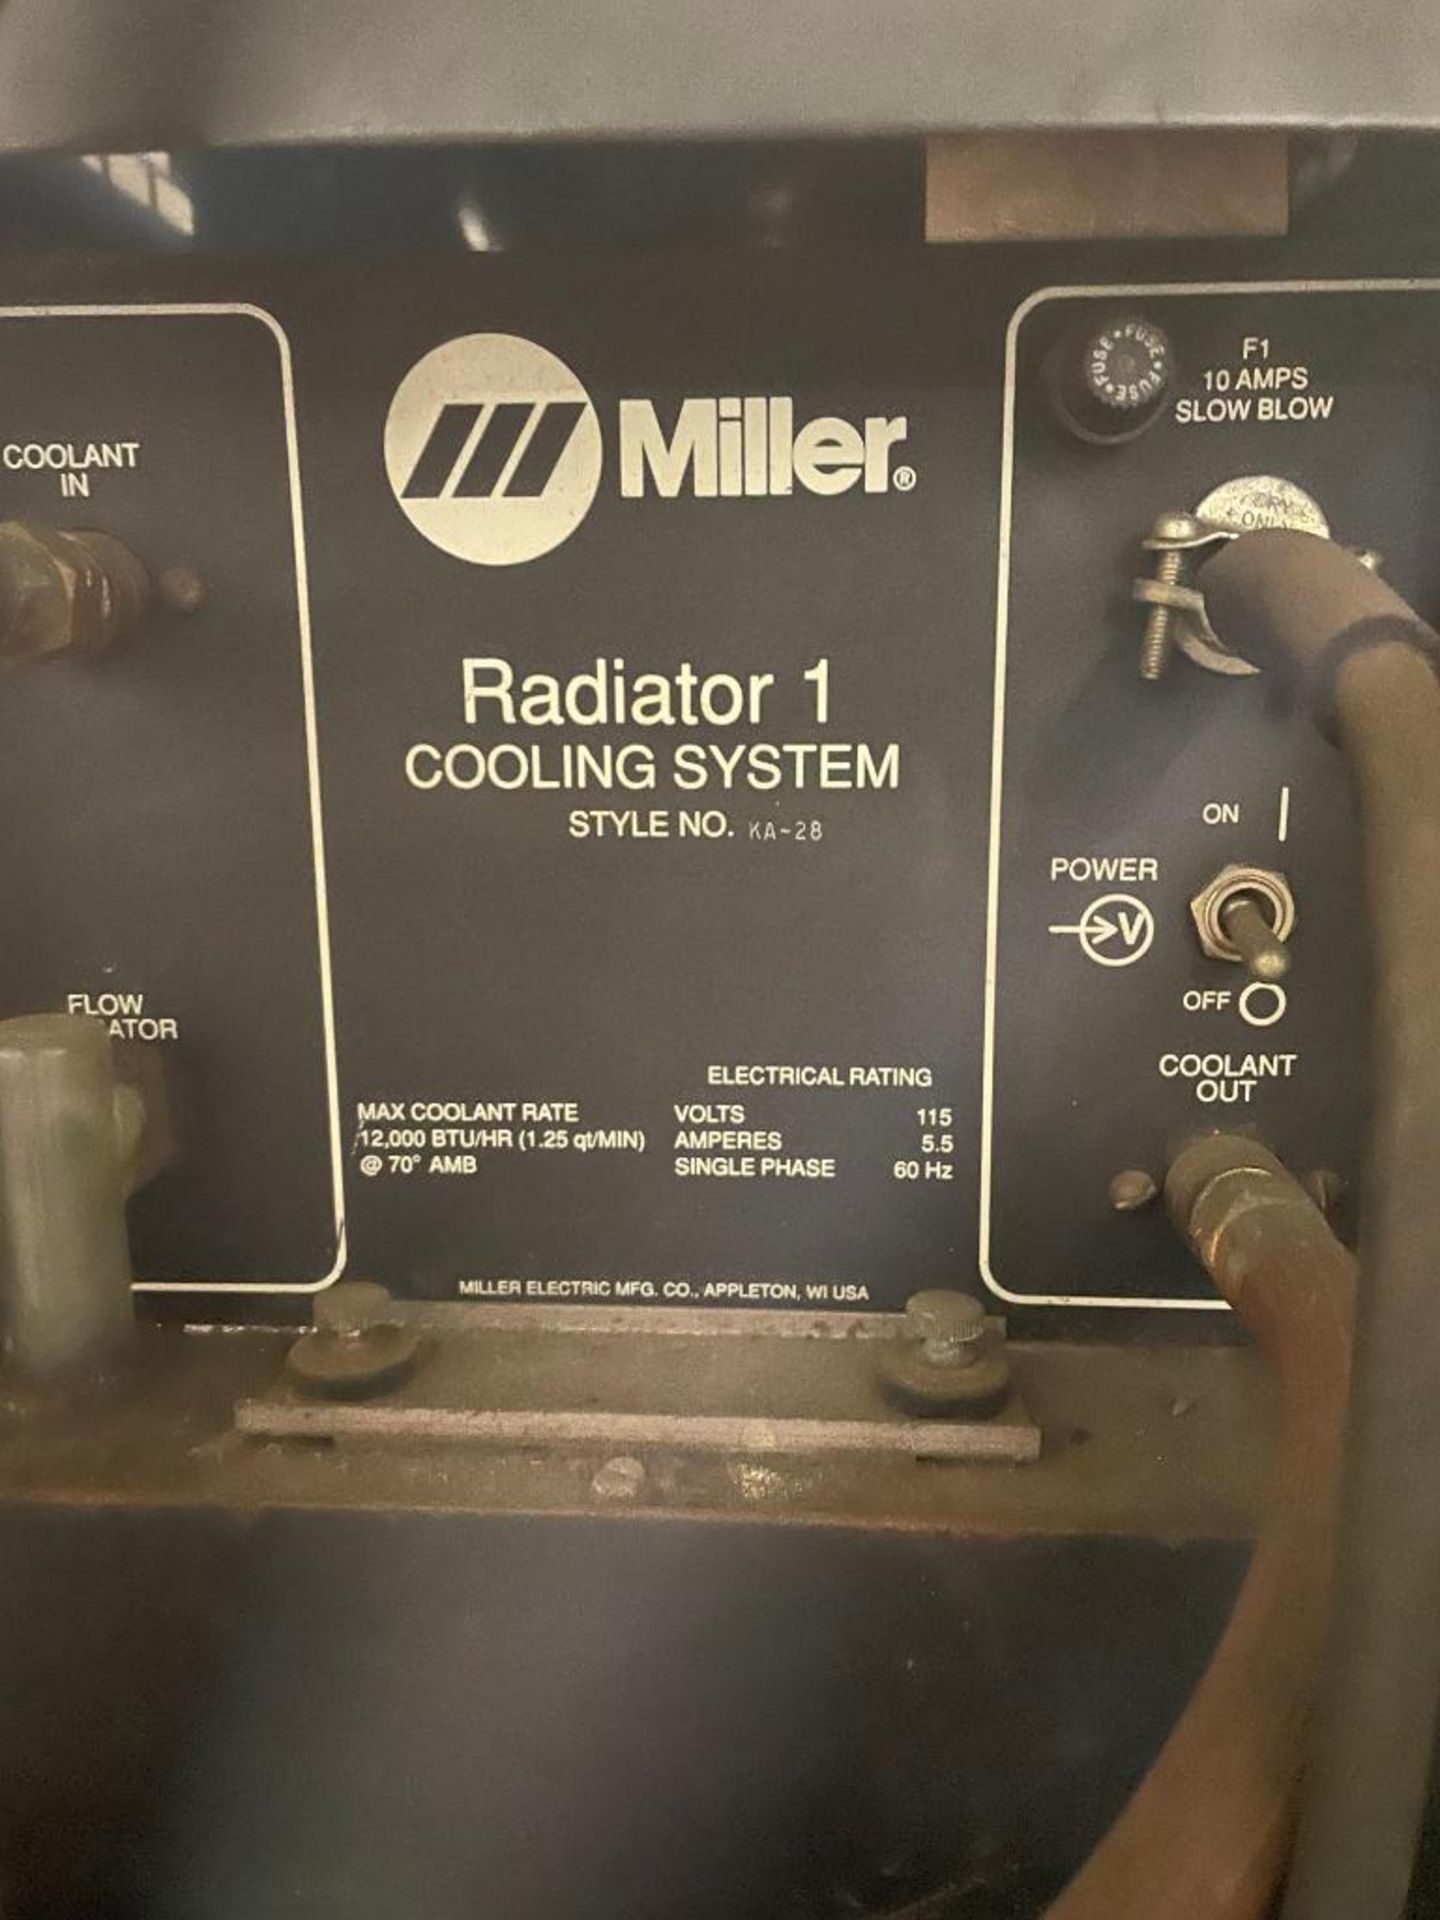 DESCRIPTION: MILLER RADIATOR 1 COOLING SYSTEM KA-28 BRAND/MODEL: MILLER KA-28 QTY: 1 - Image 5 of 5